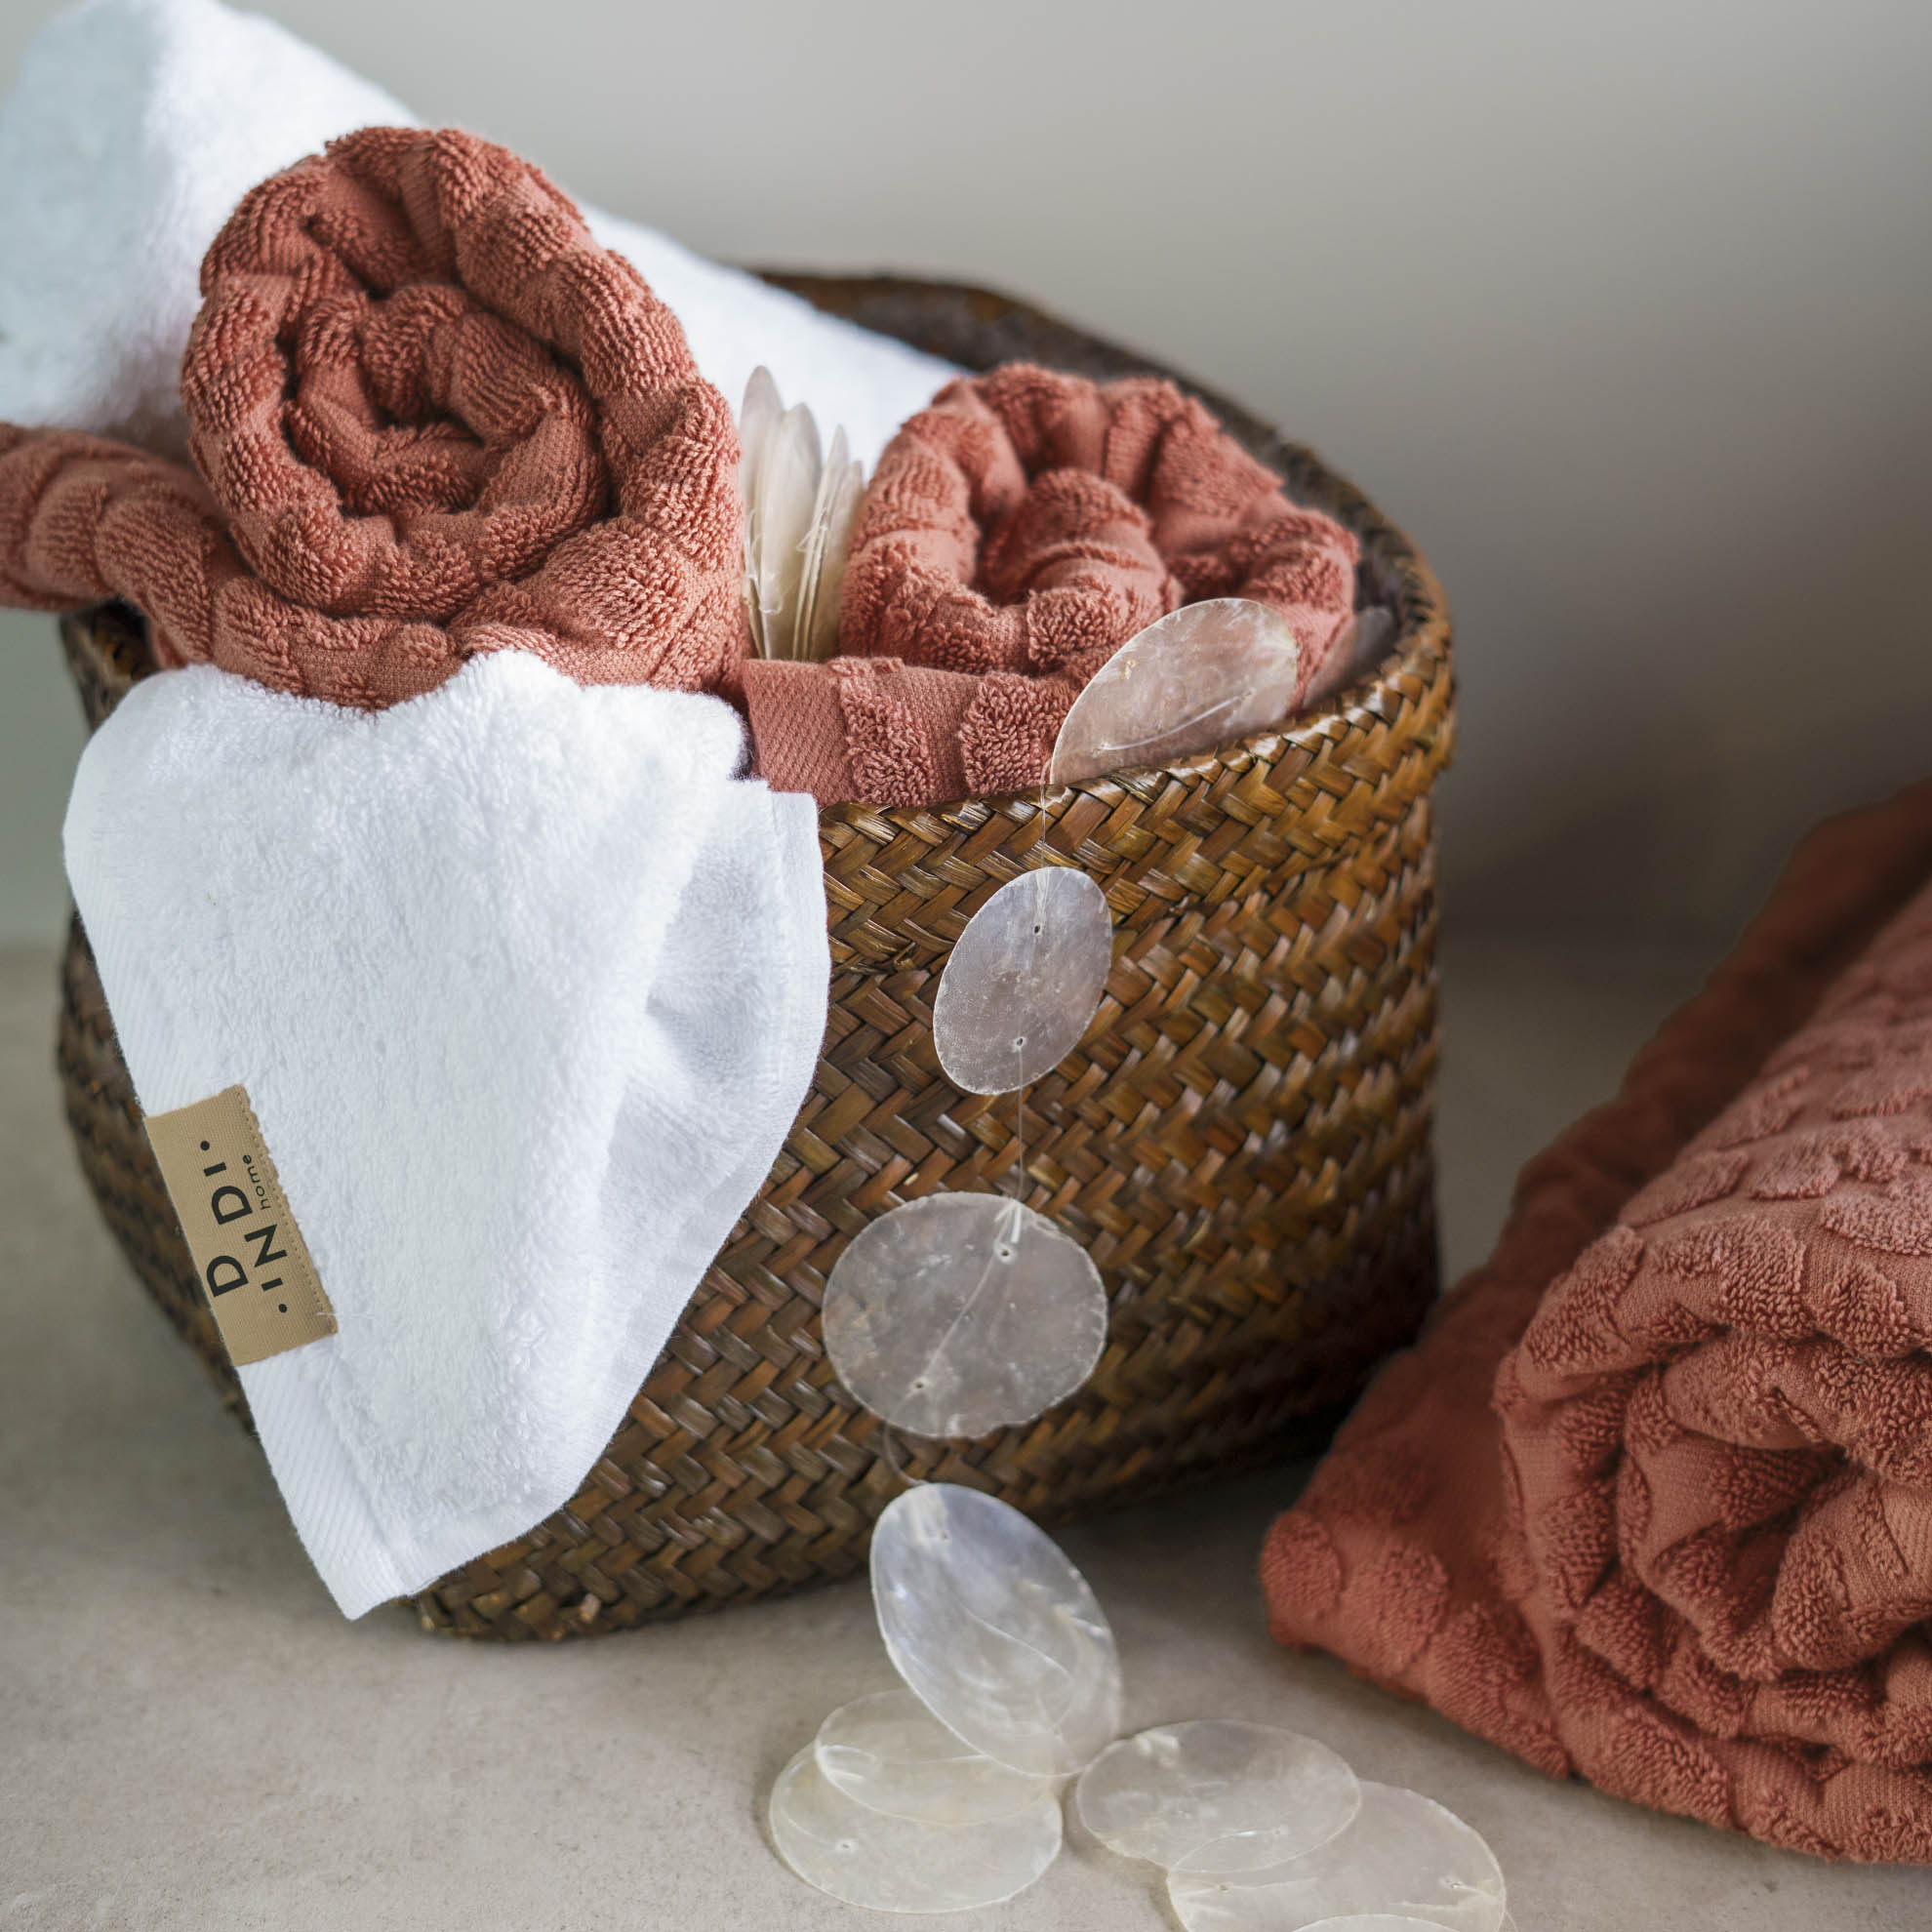 Handdoek Soft Beauty Set van 5 stuks 50x100cm